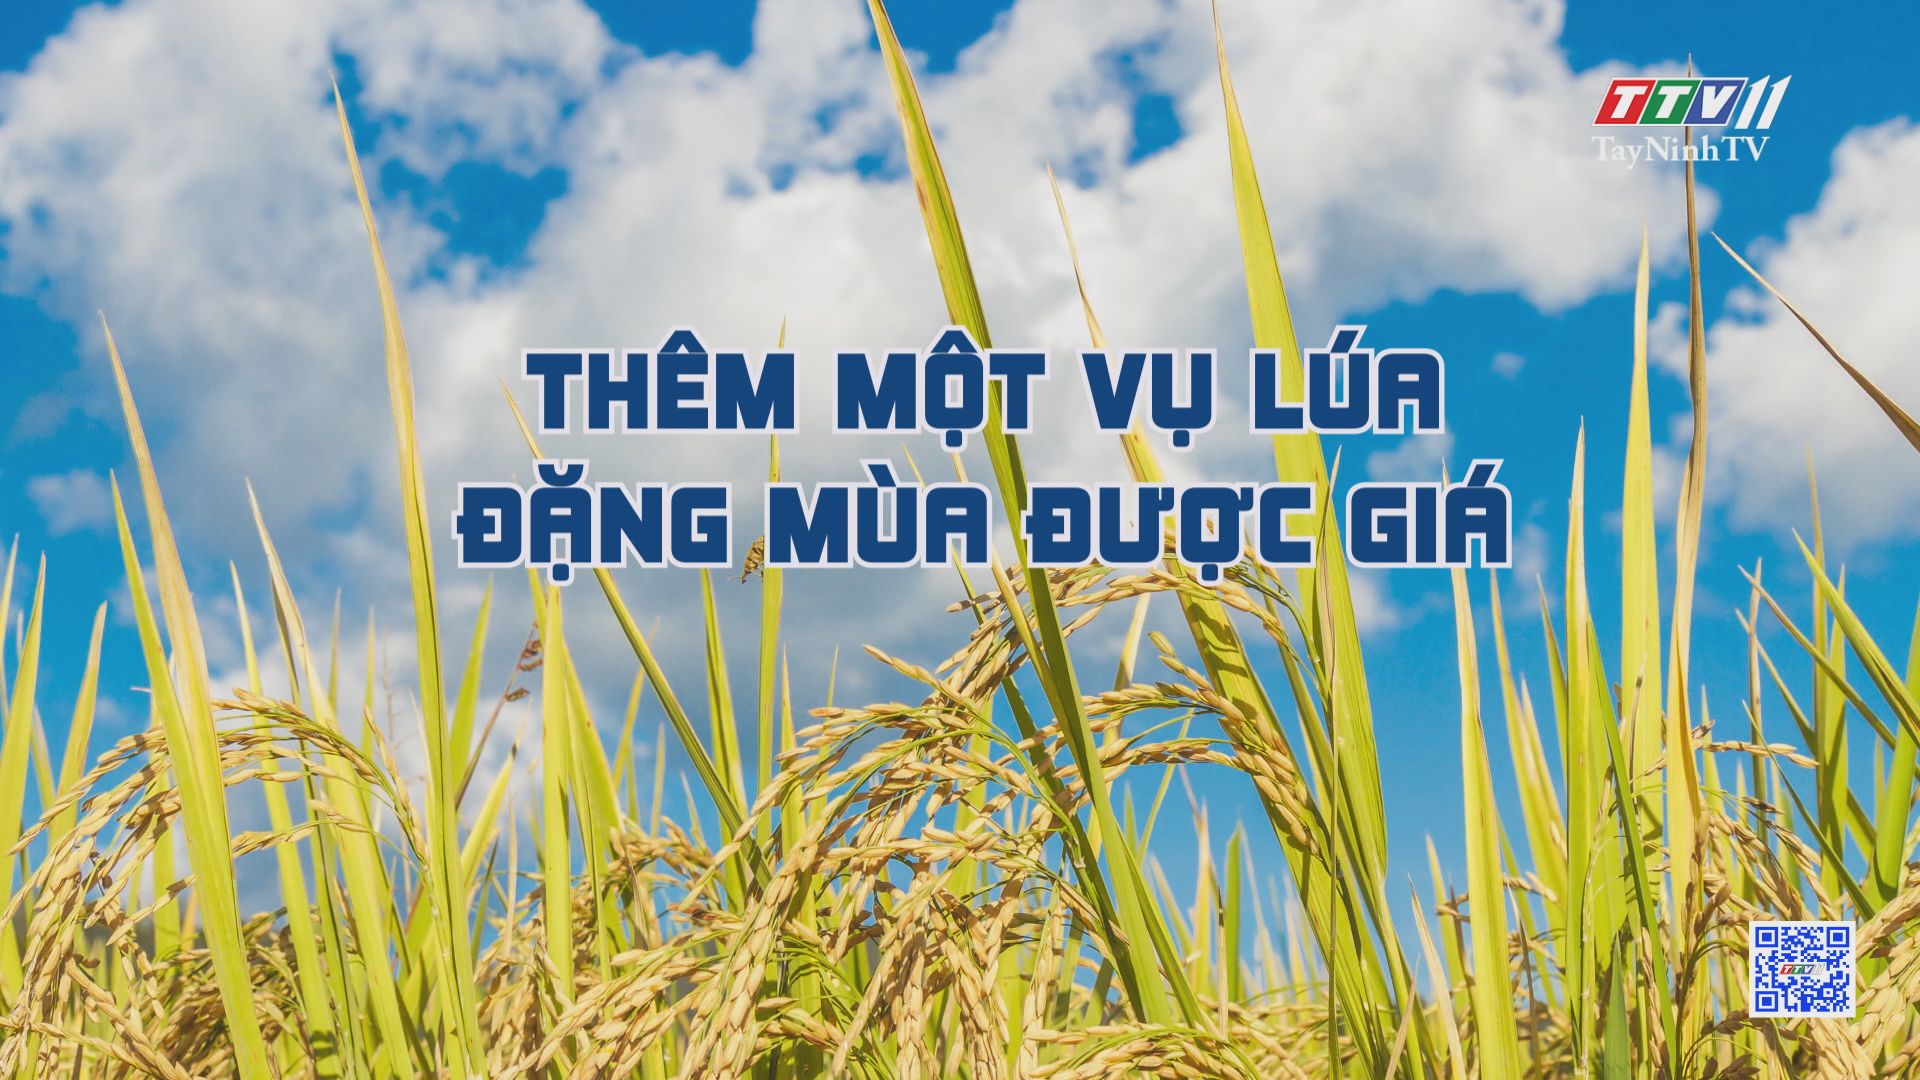 Thêm một vụ lúa đặng mùa được giá | Nông nghiệp Tây Ninh | TayNinhTV